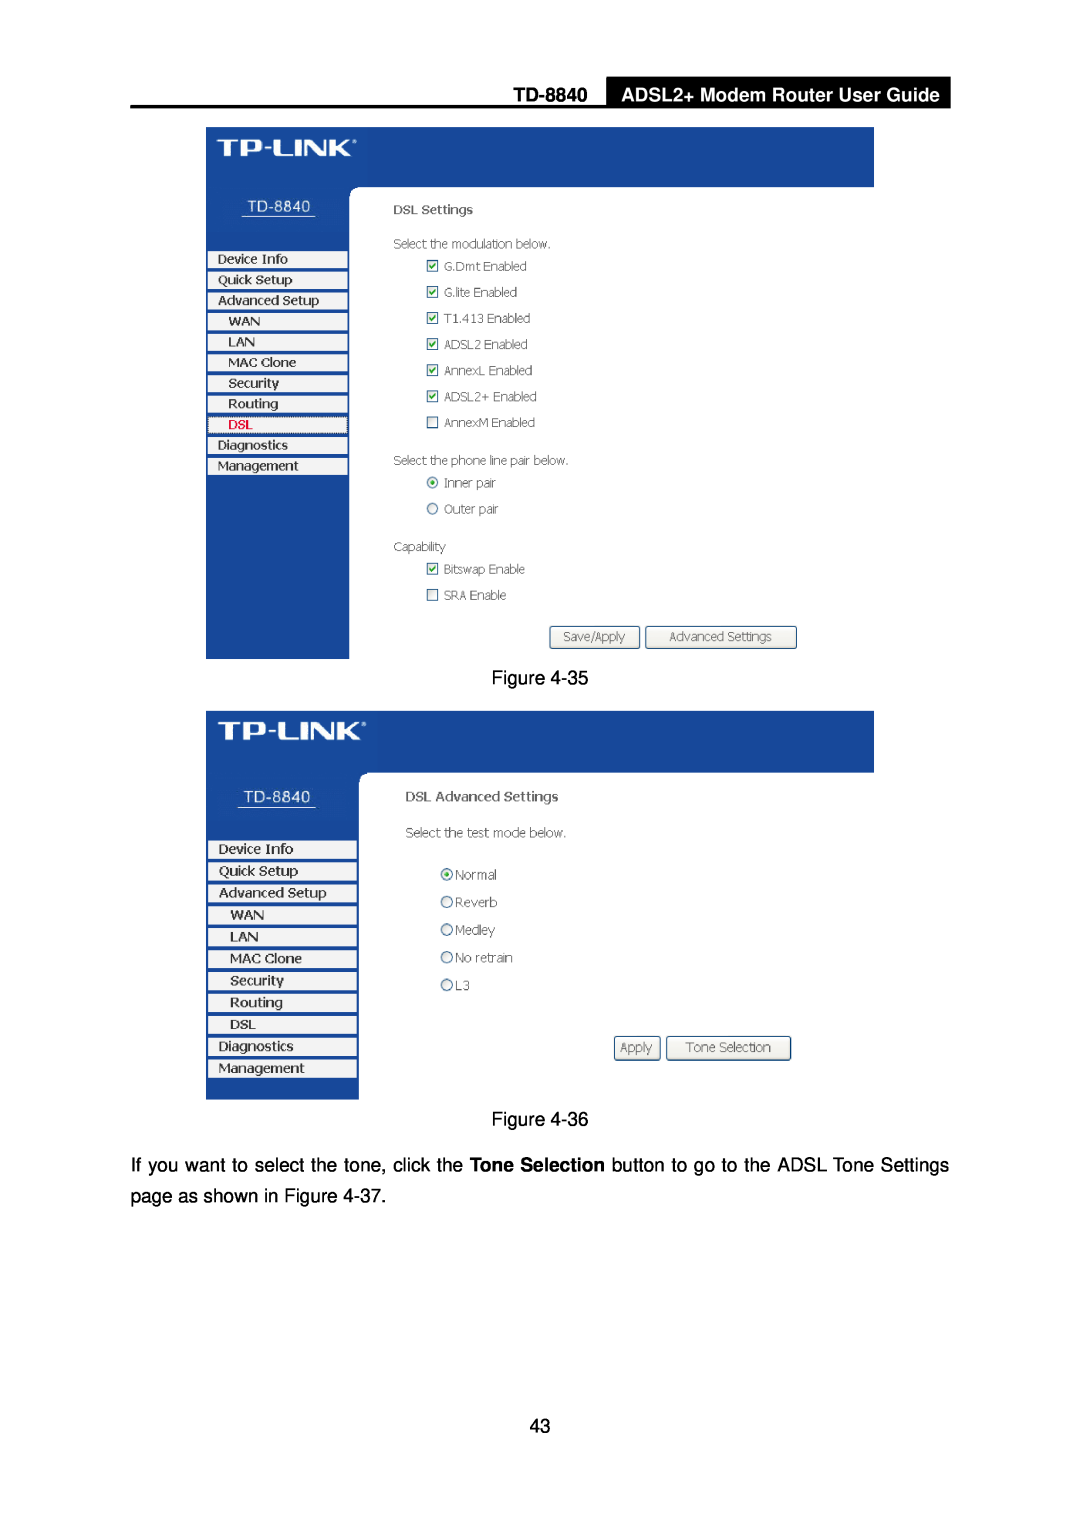 TP-Link TD-8840 manual ADSL2+ Modem Router User Guide, Figure Figure 